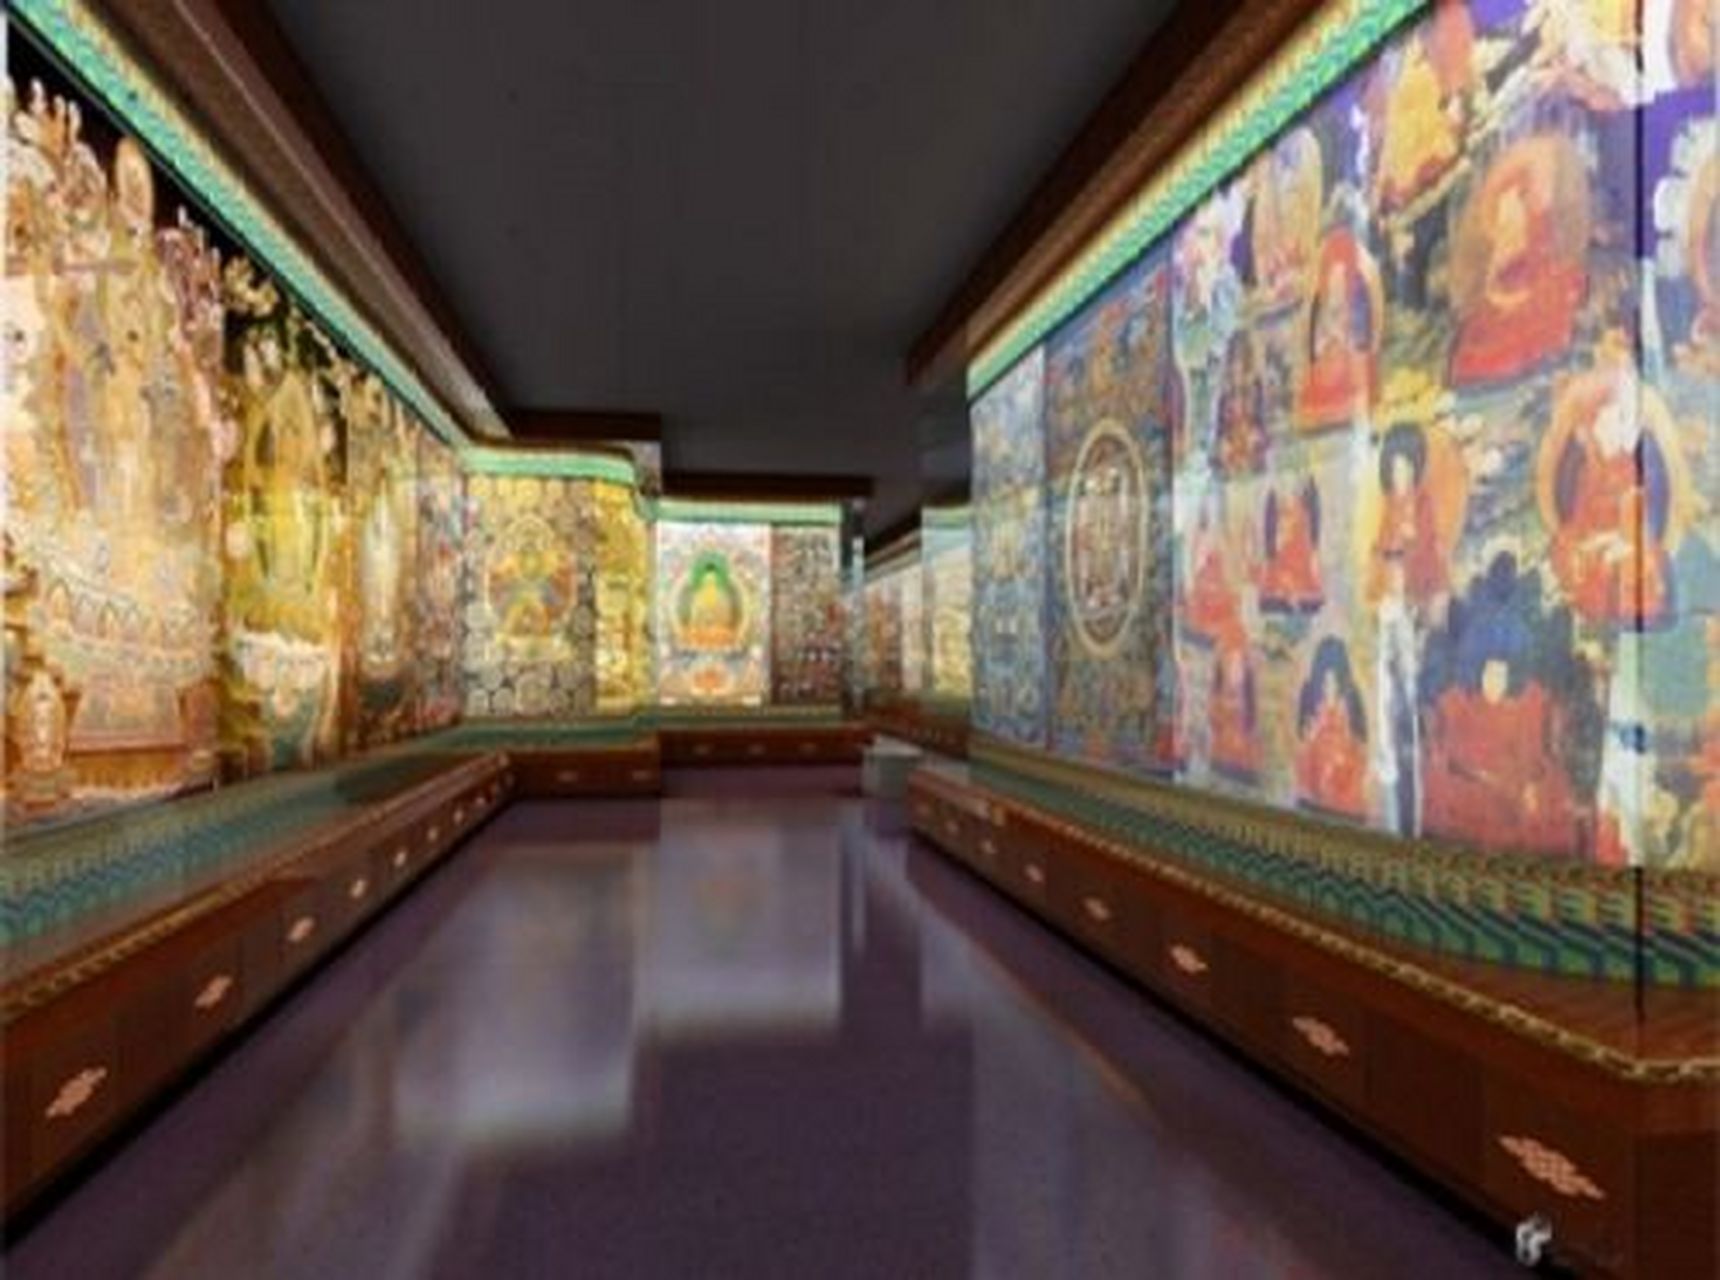 西宁旅行地之—中国藏医药文化博物馆  中国藏医药文化博物馆建成于